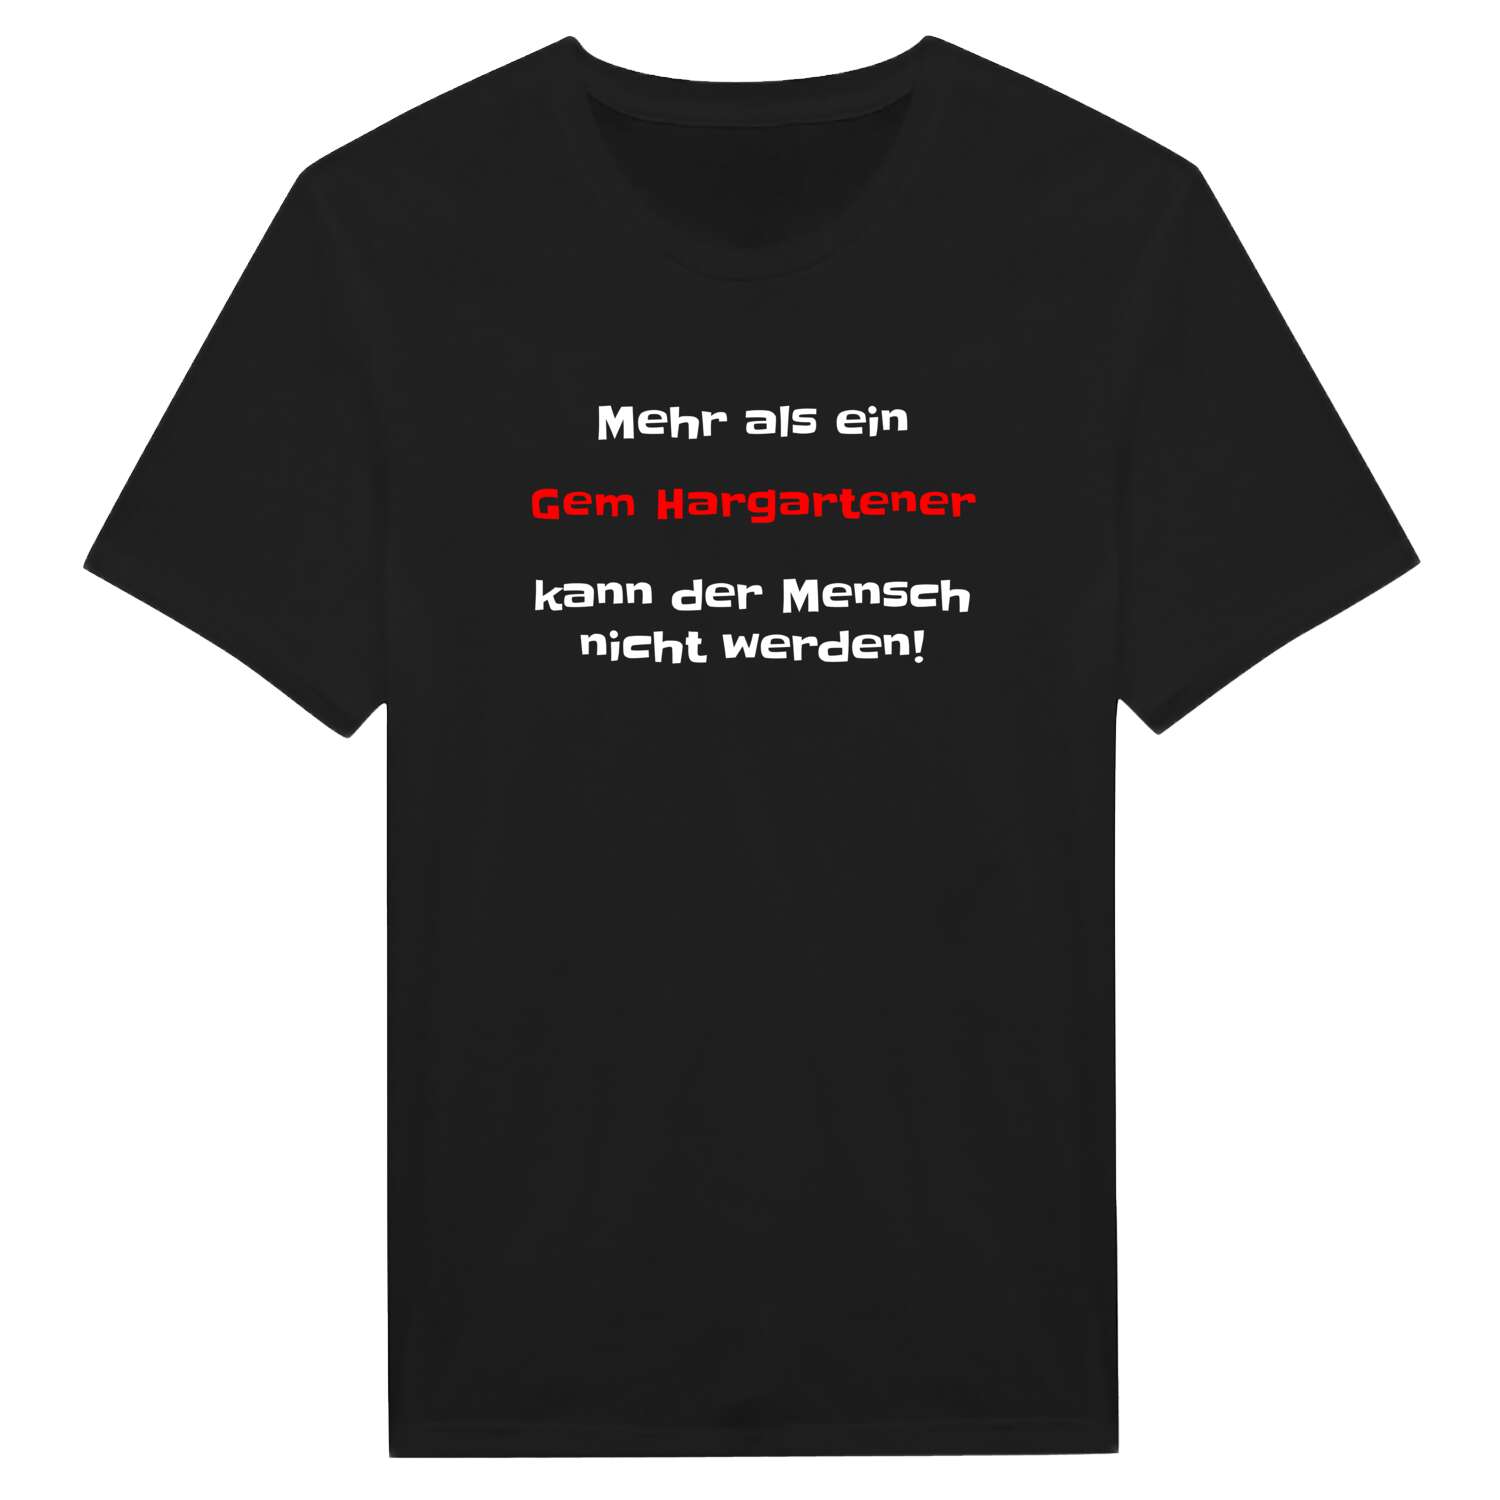 Gem Hargarten T-Shirt »Mehr als ein«